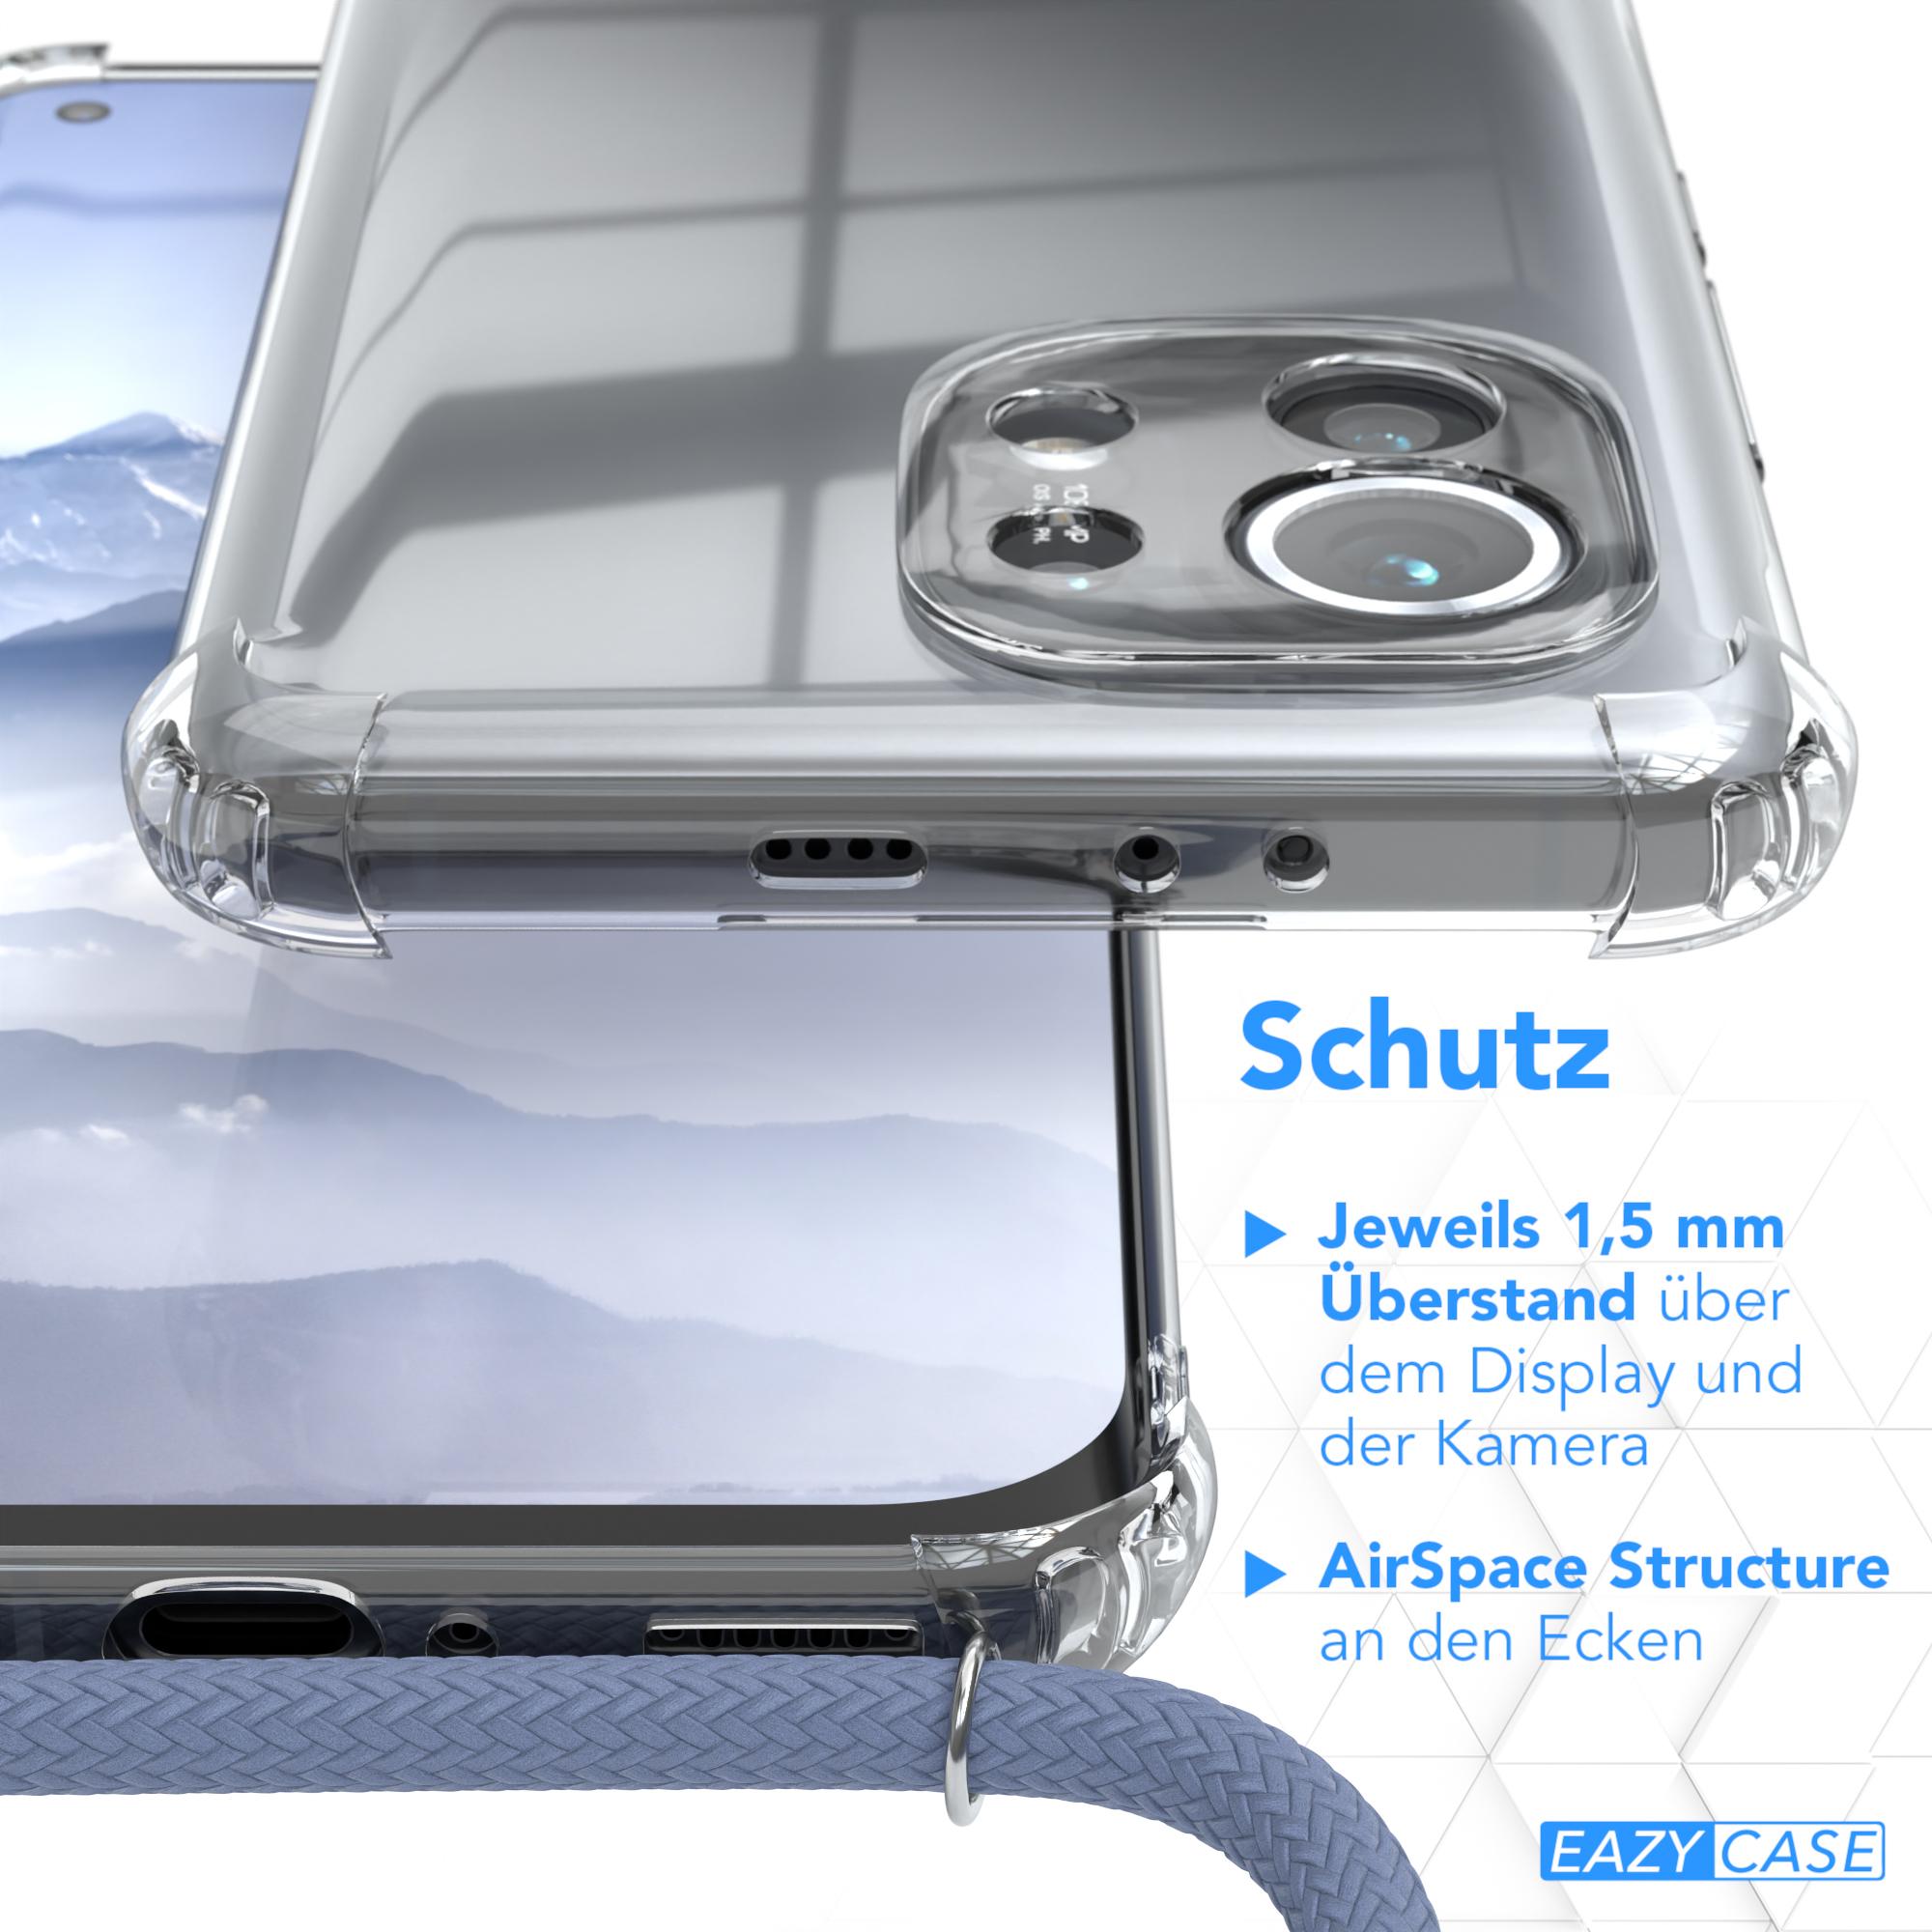 mit Clear Cover Umhängetasche, 11 Blau 5G, Xiaomi, CASE Umhängeband, EAZY Mi